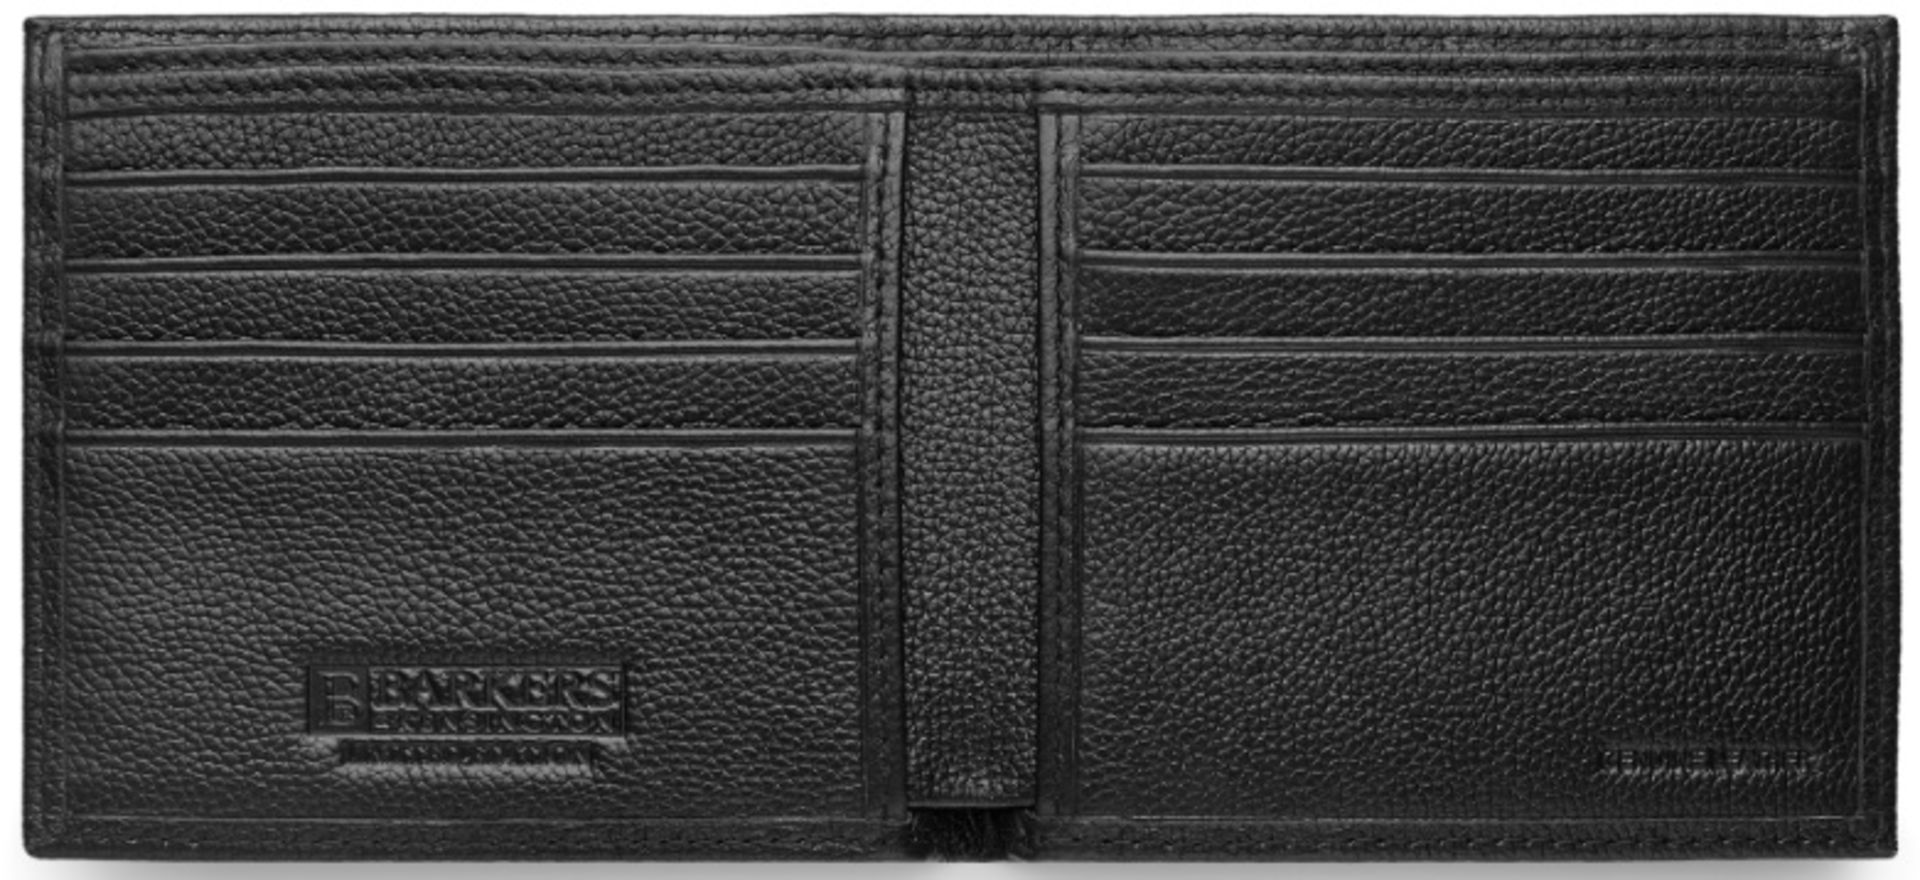 + VAT Brand New Barkers Of Kensington Gents Black Genuine Leather Wallet (SRP £69.99) - Image 2 of 2